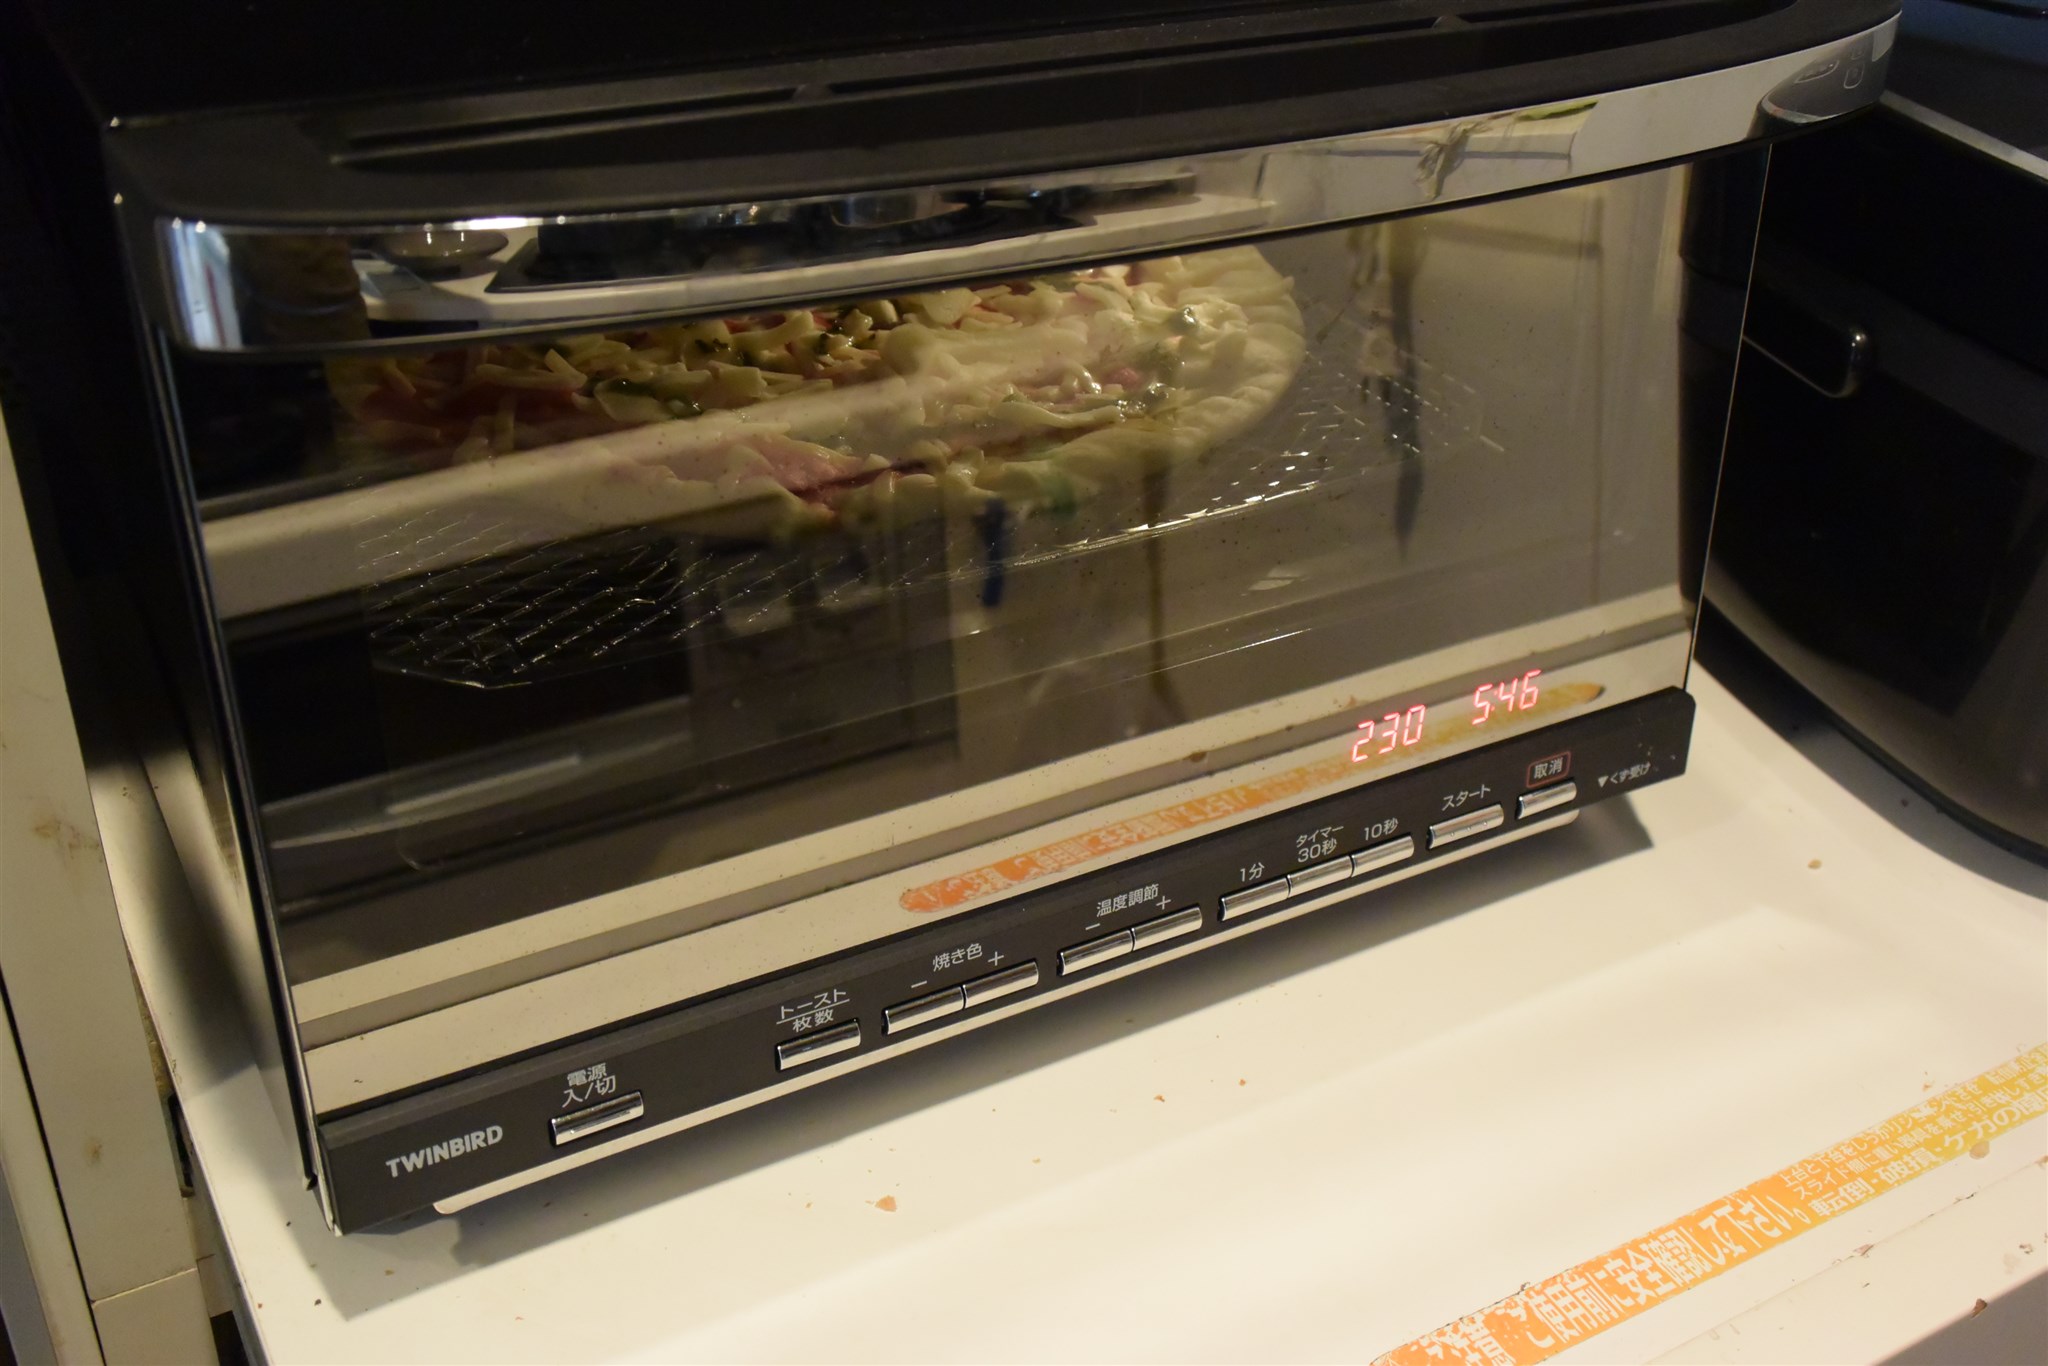 6000円のミラーガラス搭載オーブントースターがデザイン家電で安かっこいいので買ってみました